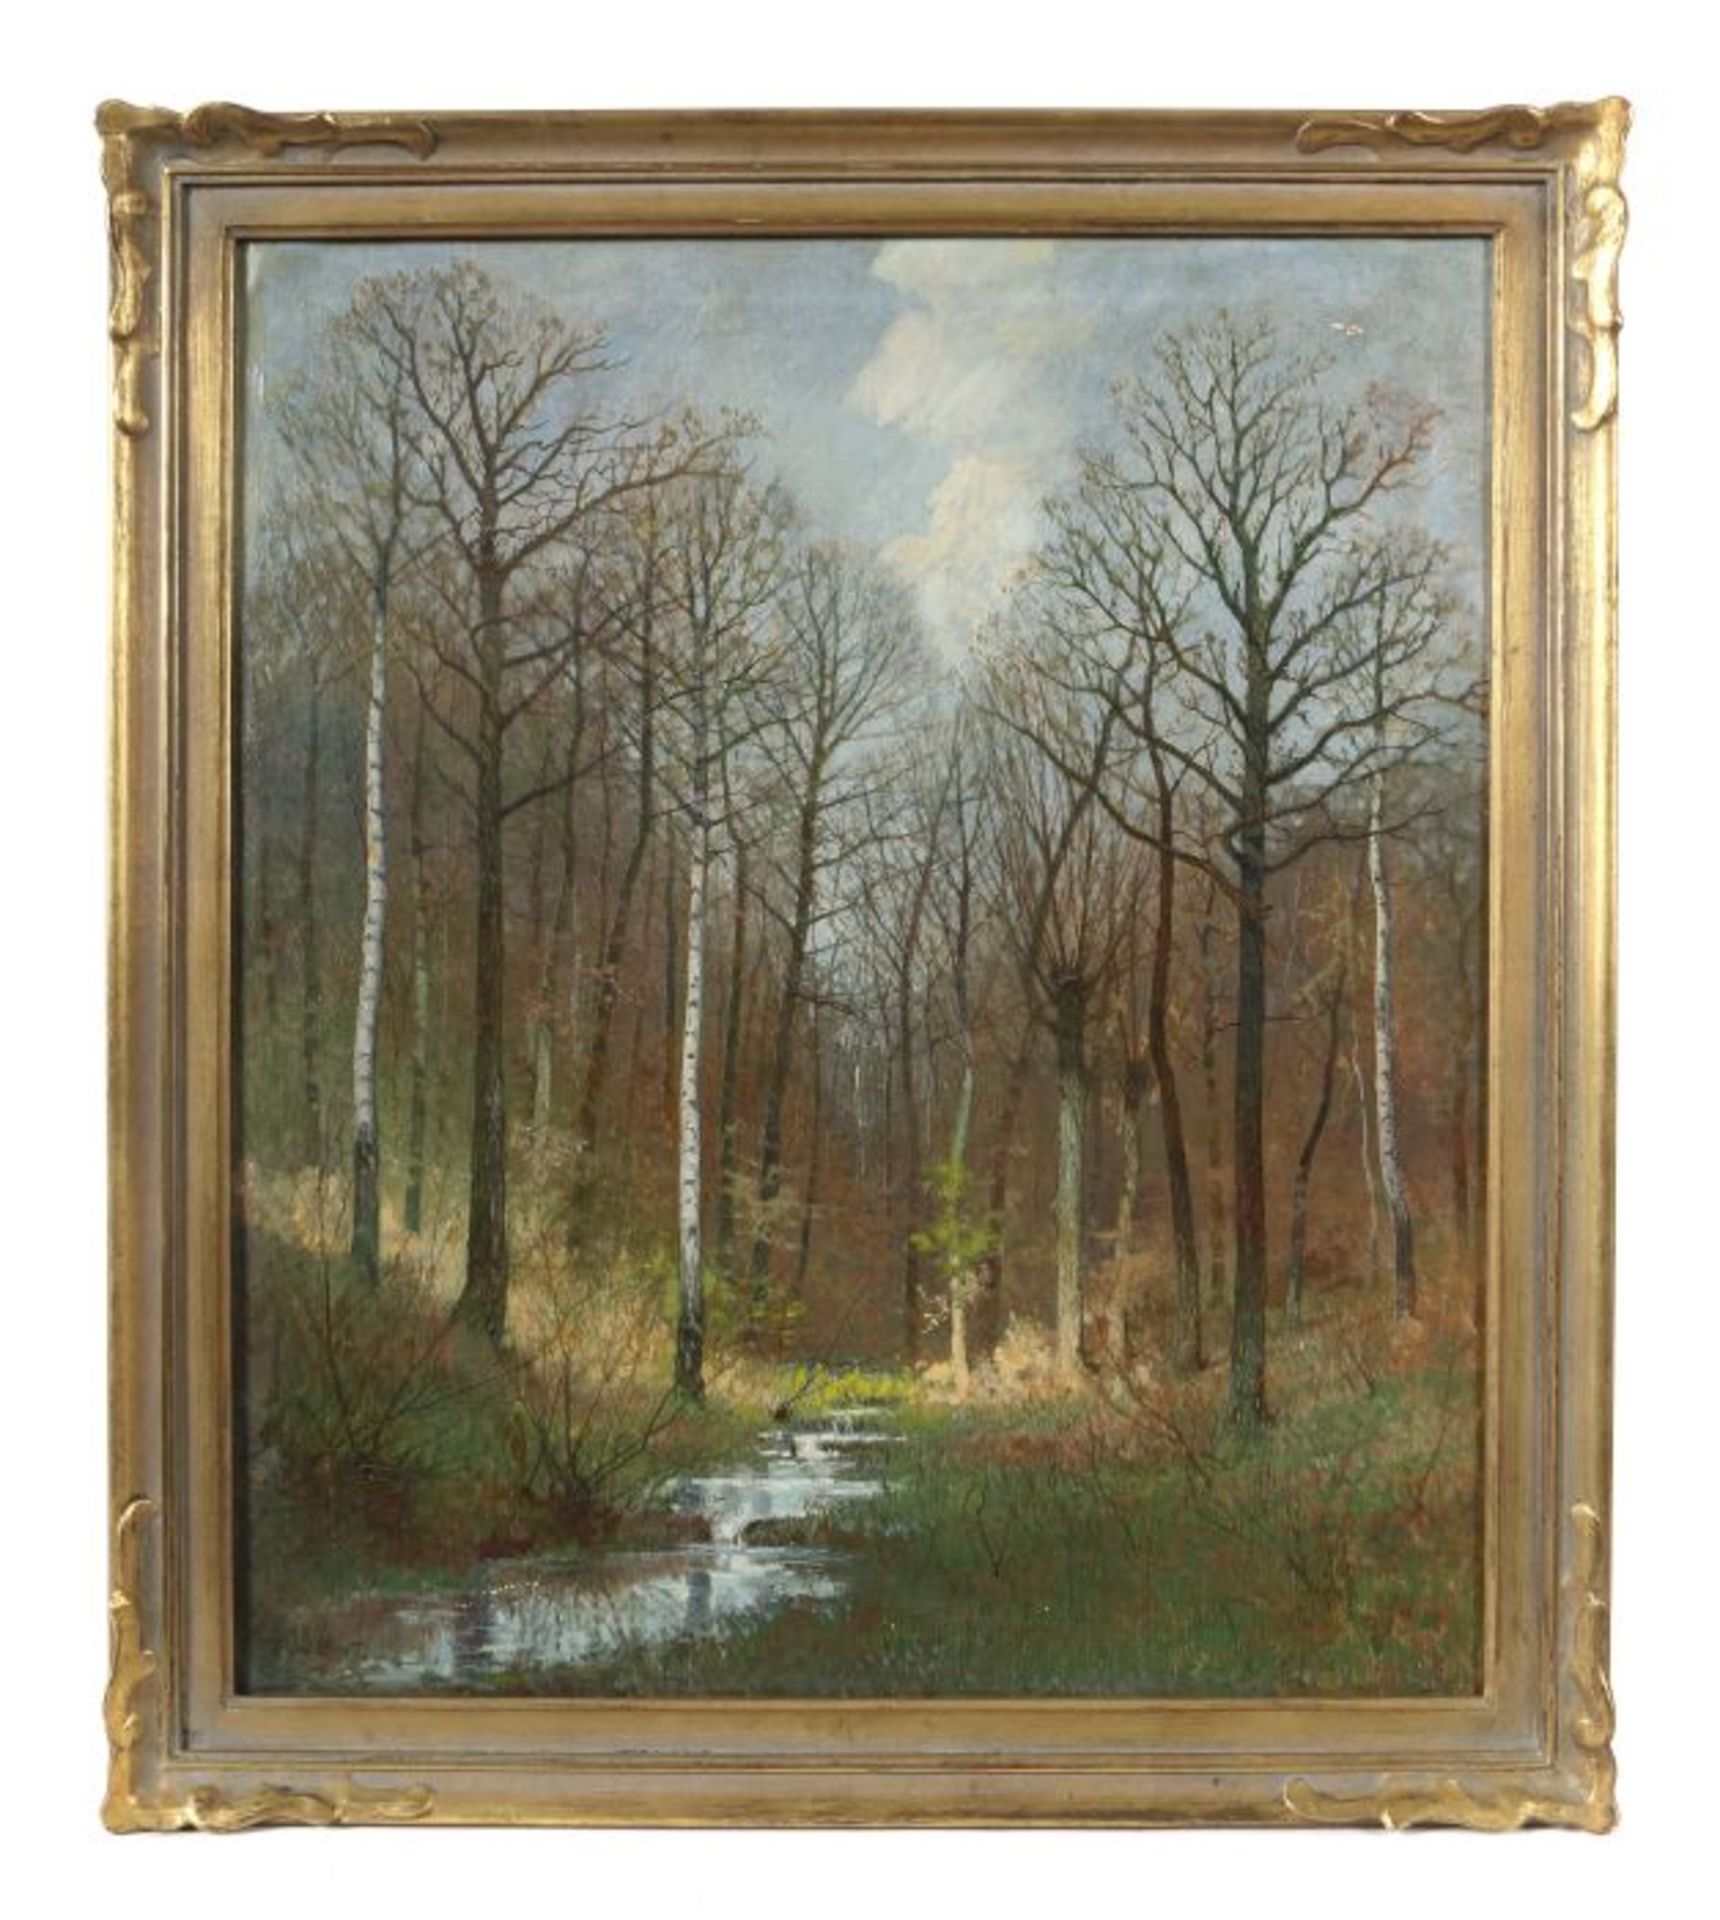 Vent, Rudolf Weimar 1880 - 1948 ebenda, deutscher Landschaftsmaler. "Frühling im Birkenwald", mit - Bild 2 aus 3